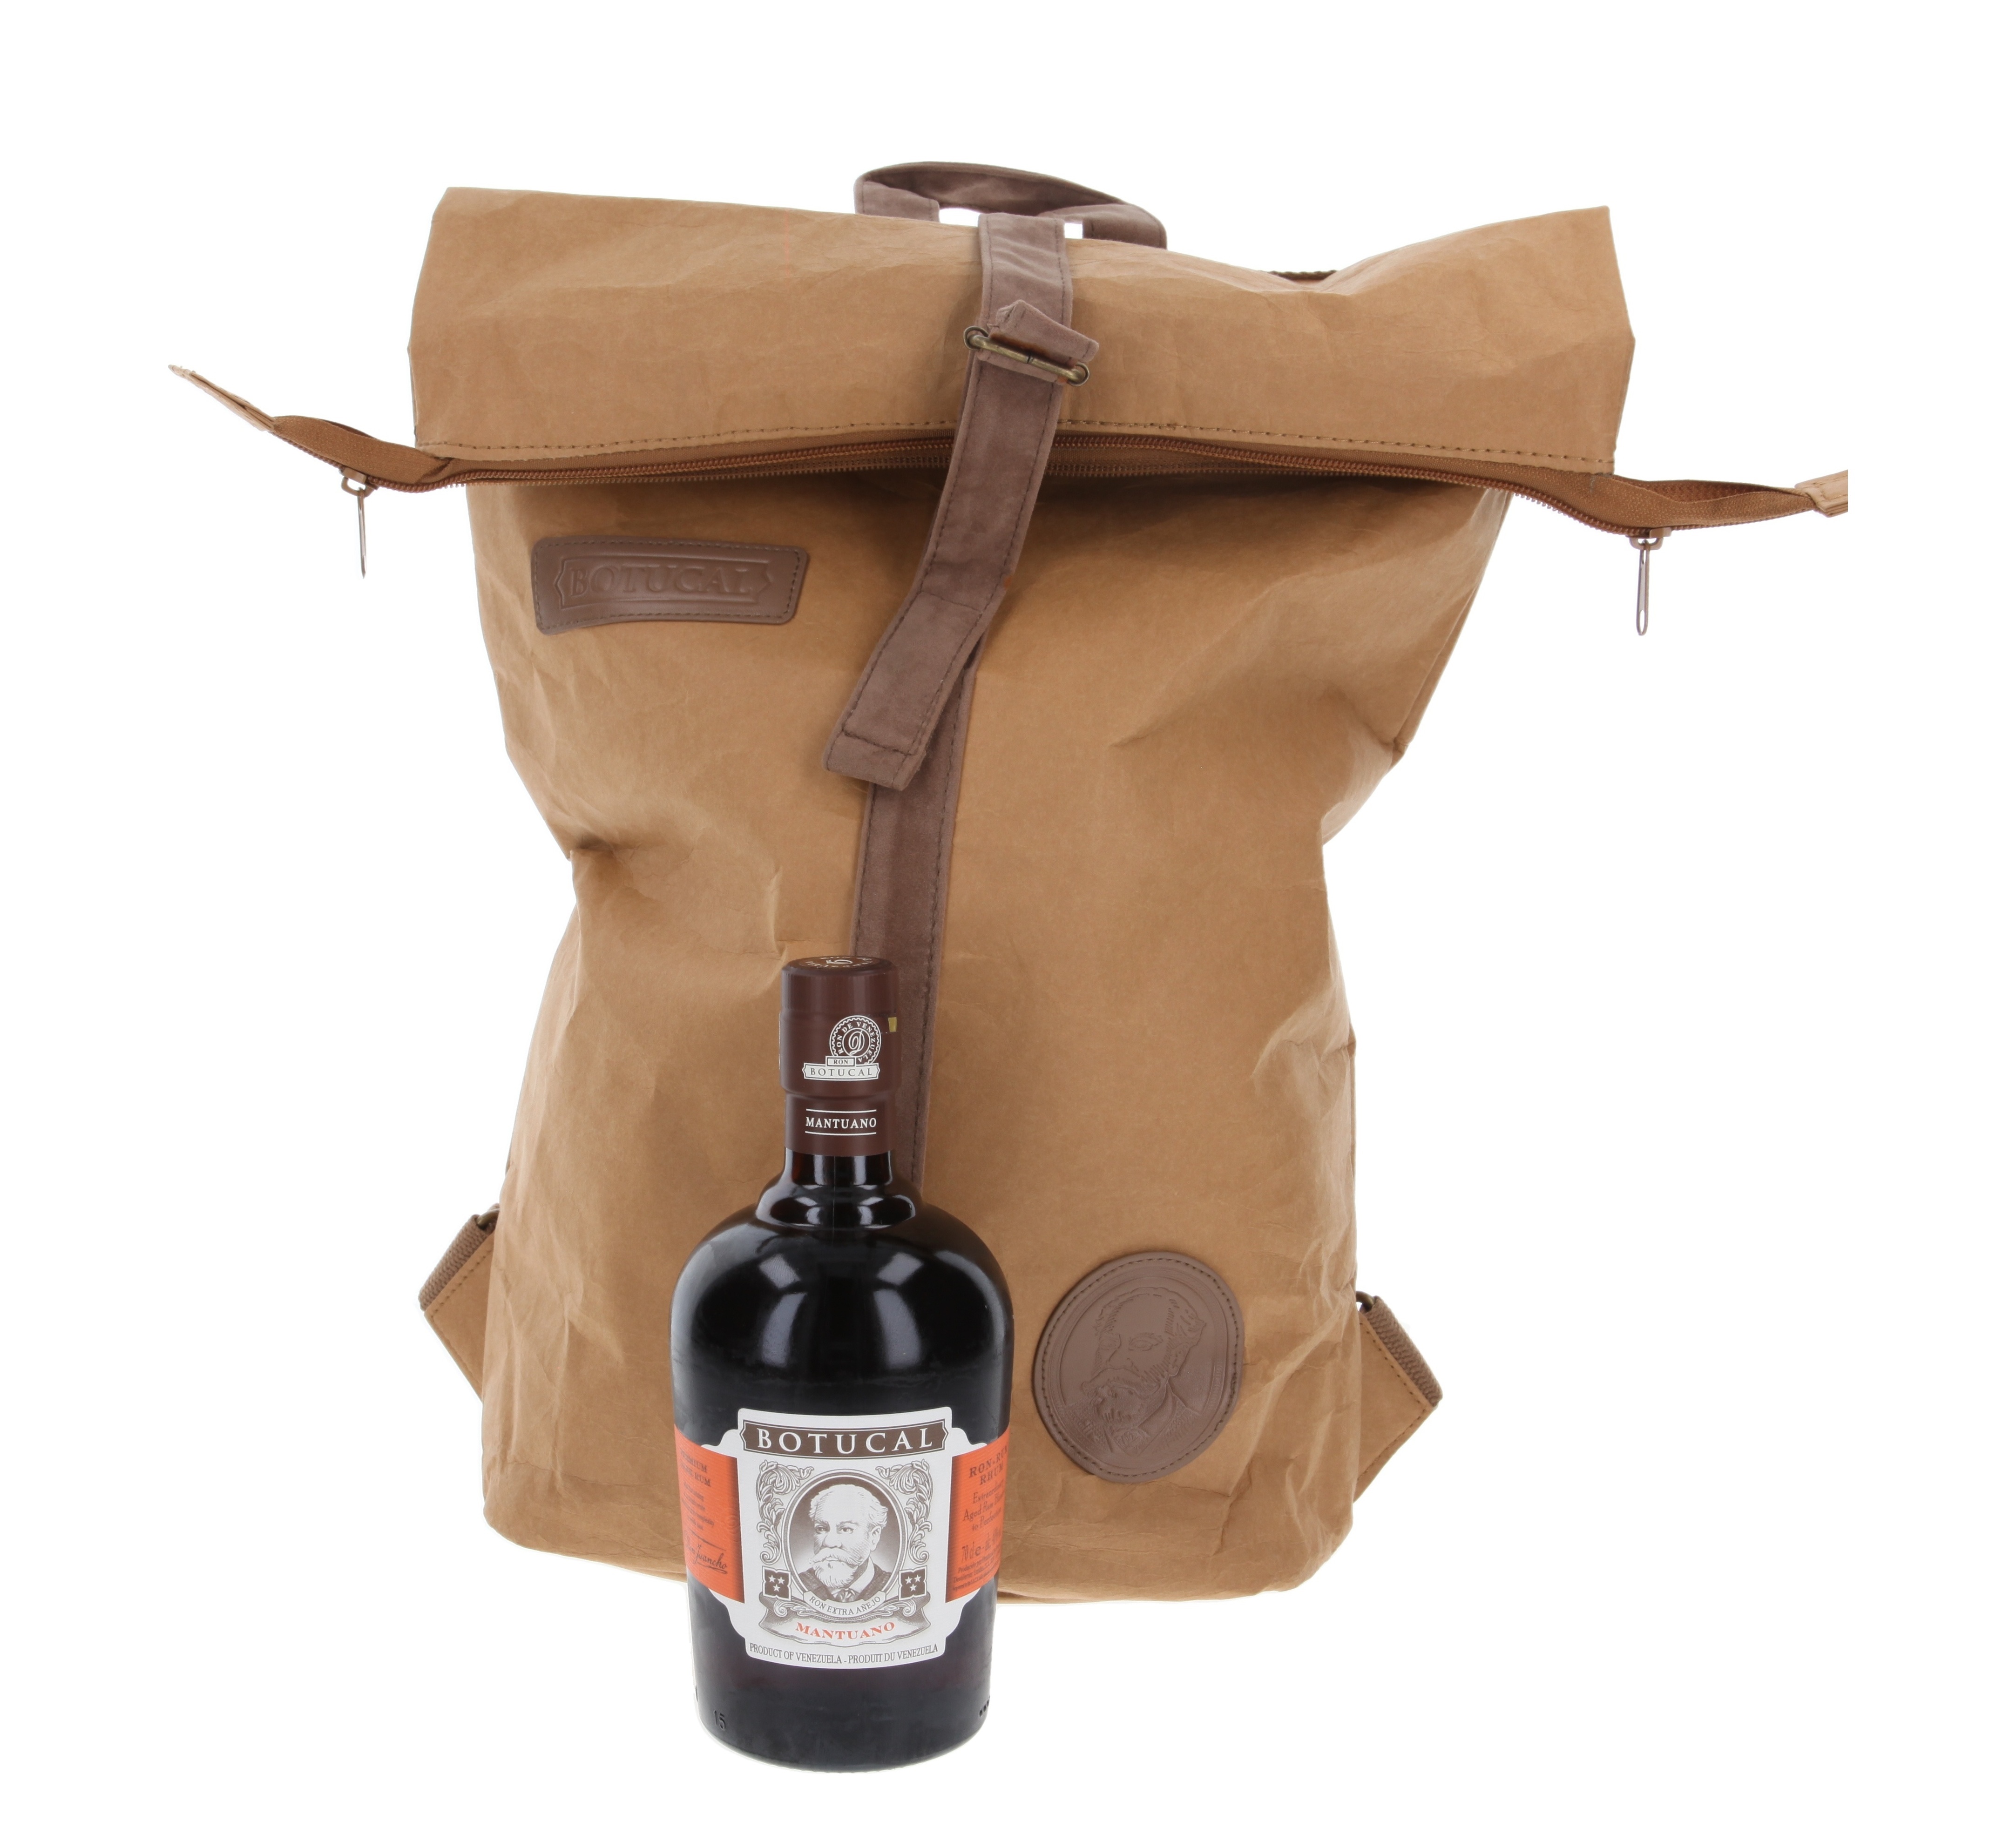 Zum | Rucksack Mantuano Rum Botucal Whisky.de » Online-Shop mit